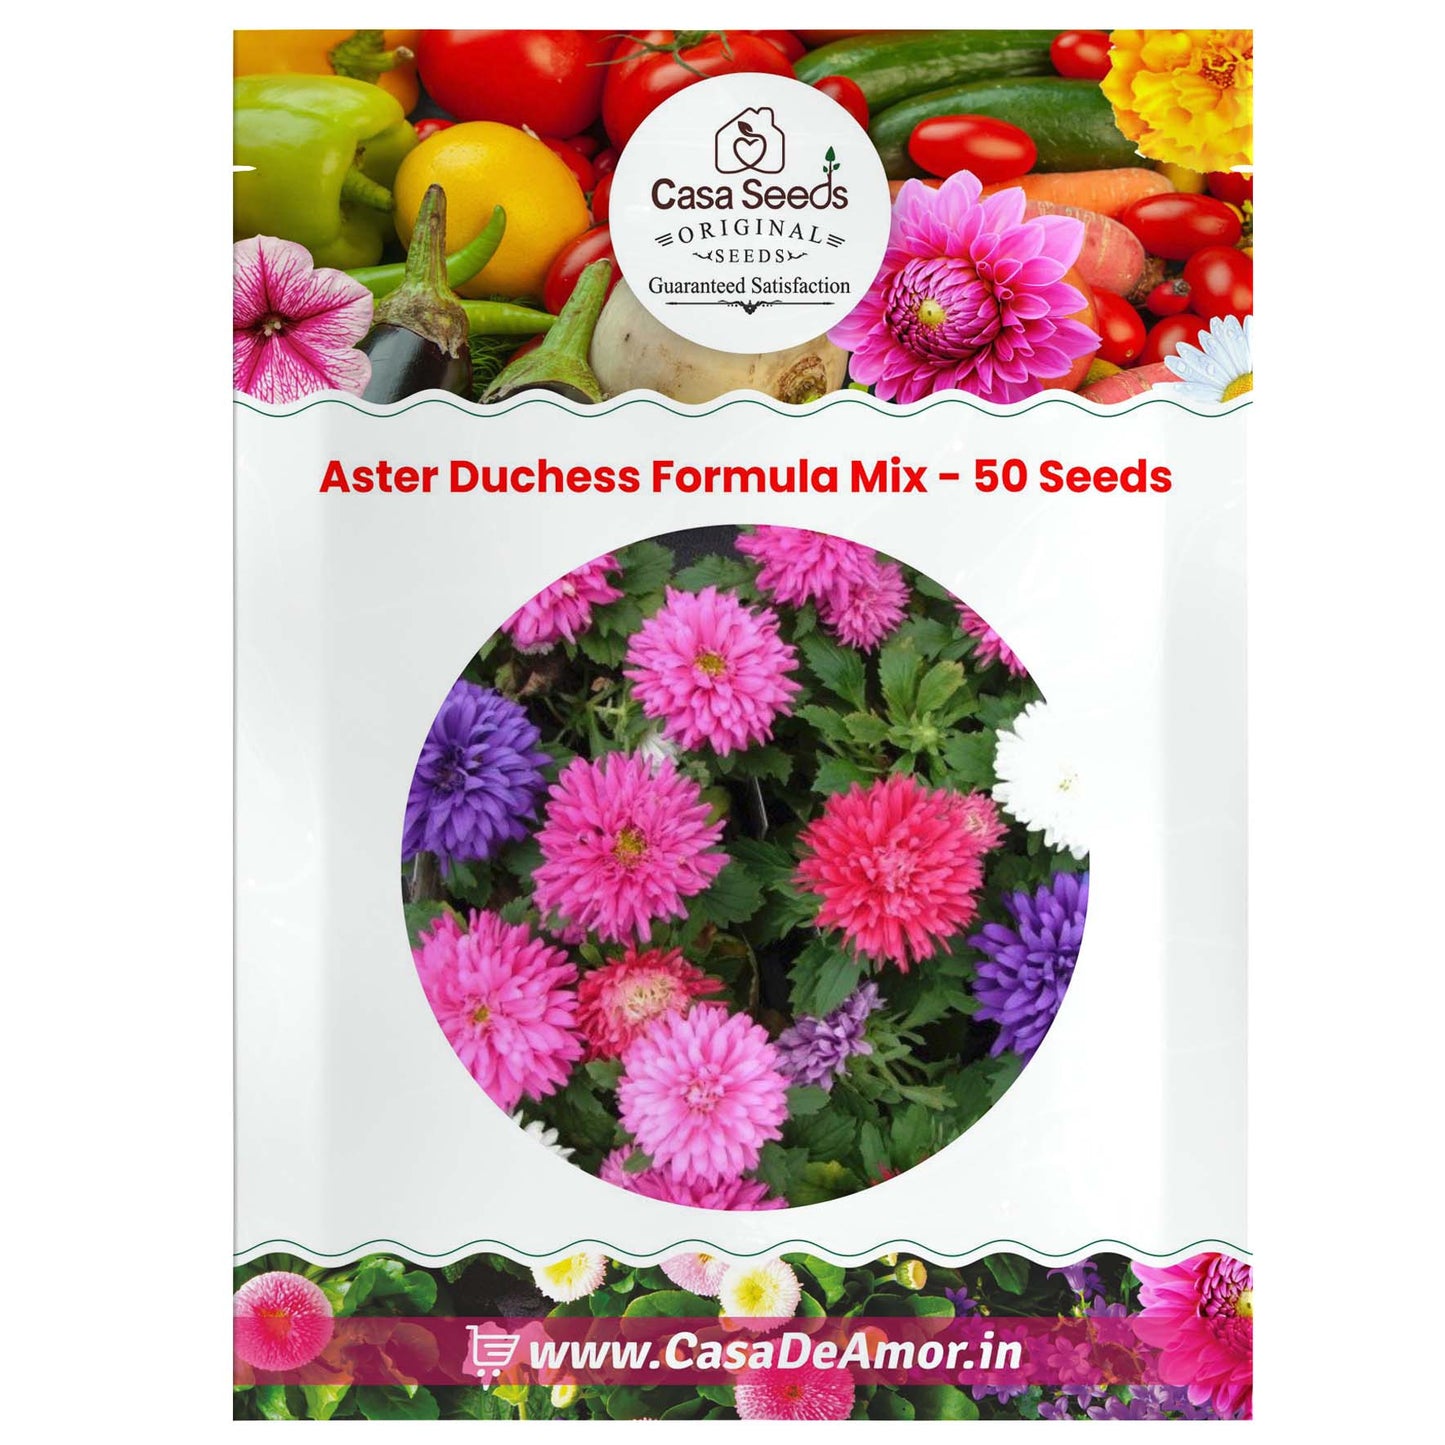 Aster Duchess Formula Mix - 50 Seeds